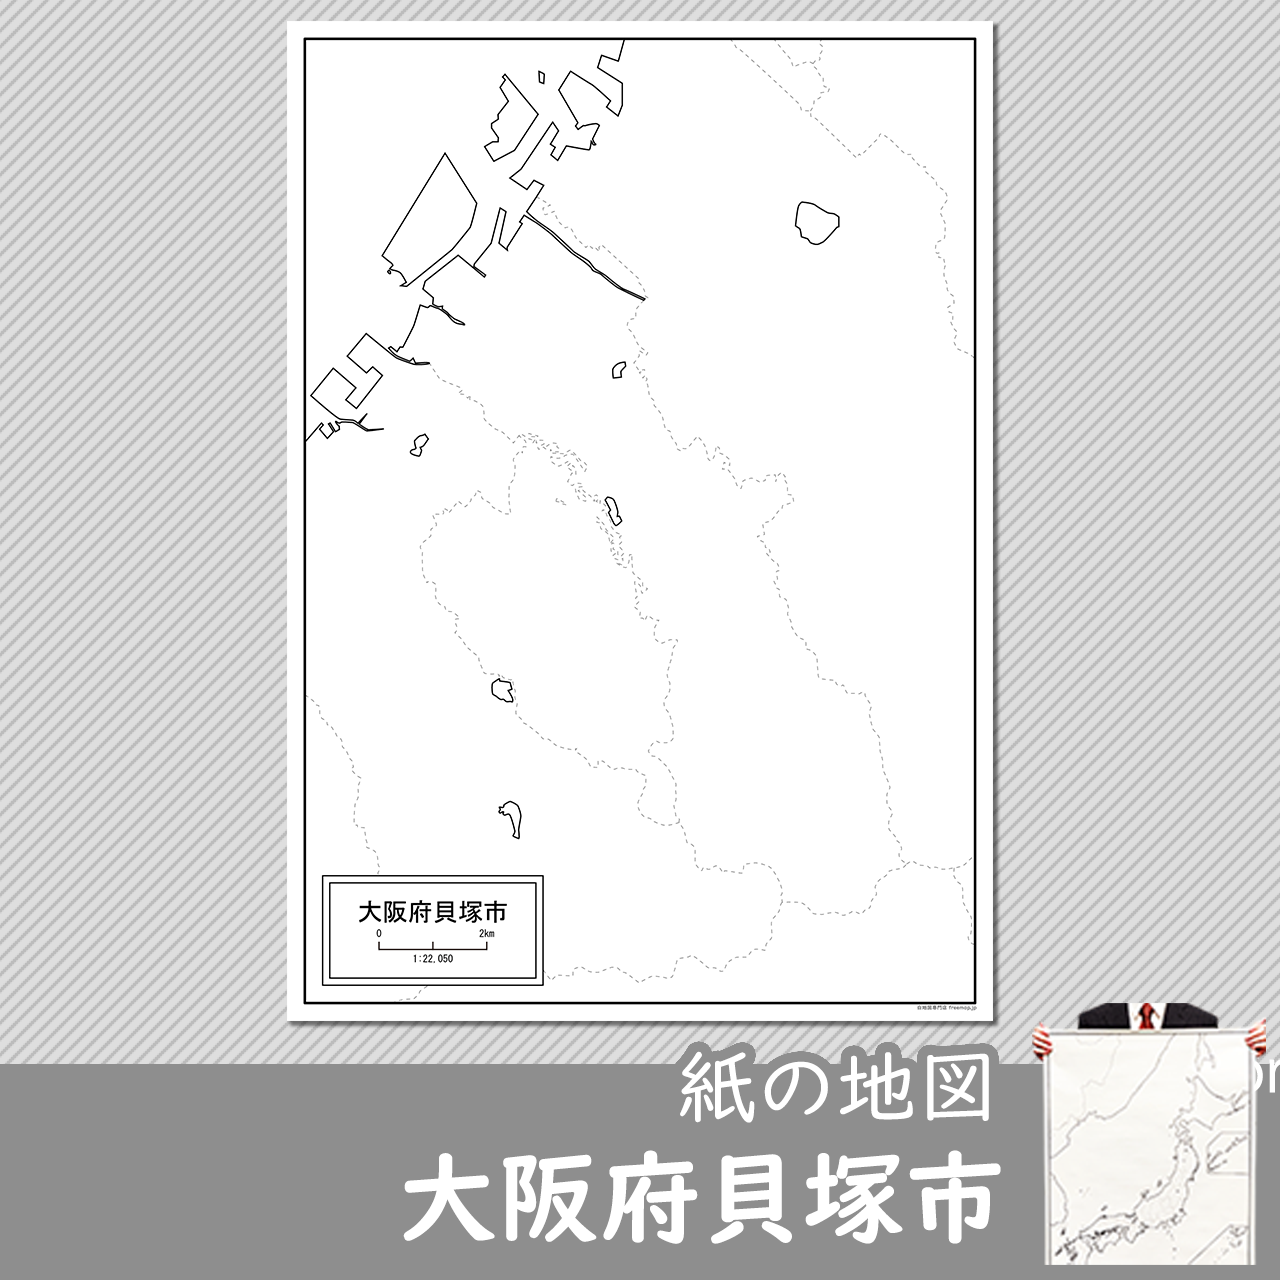 大阪府貝塚市の紙の白地図